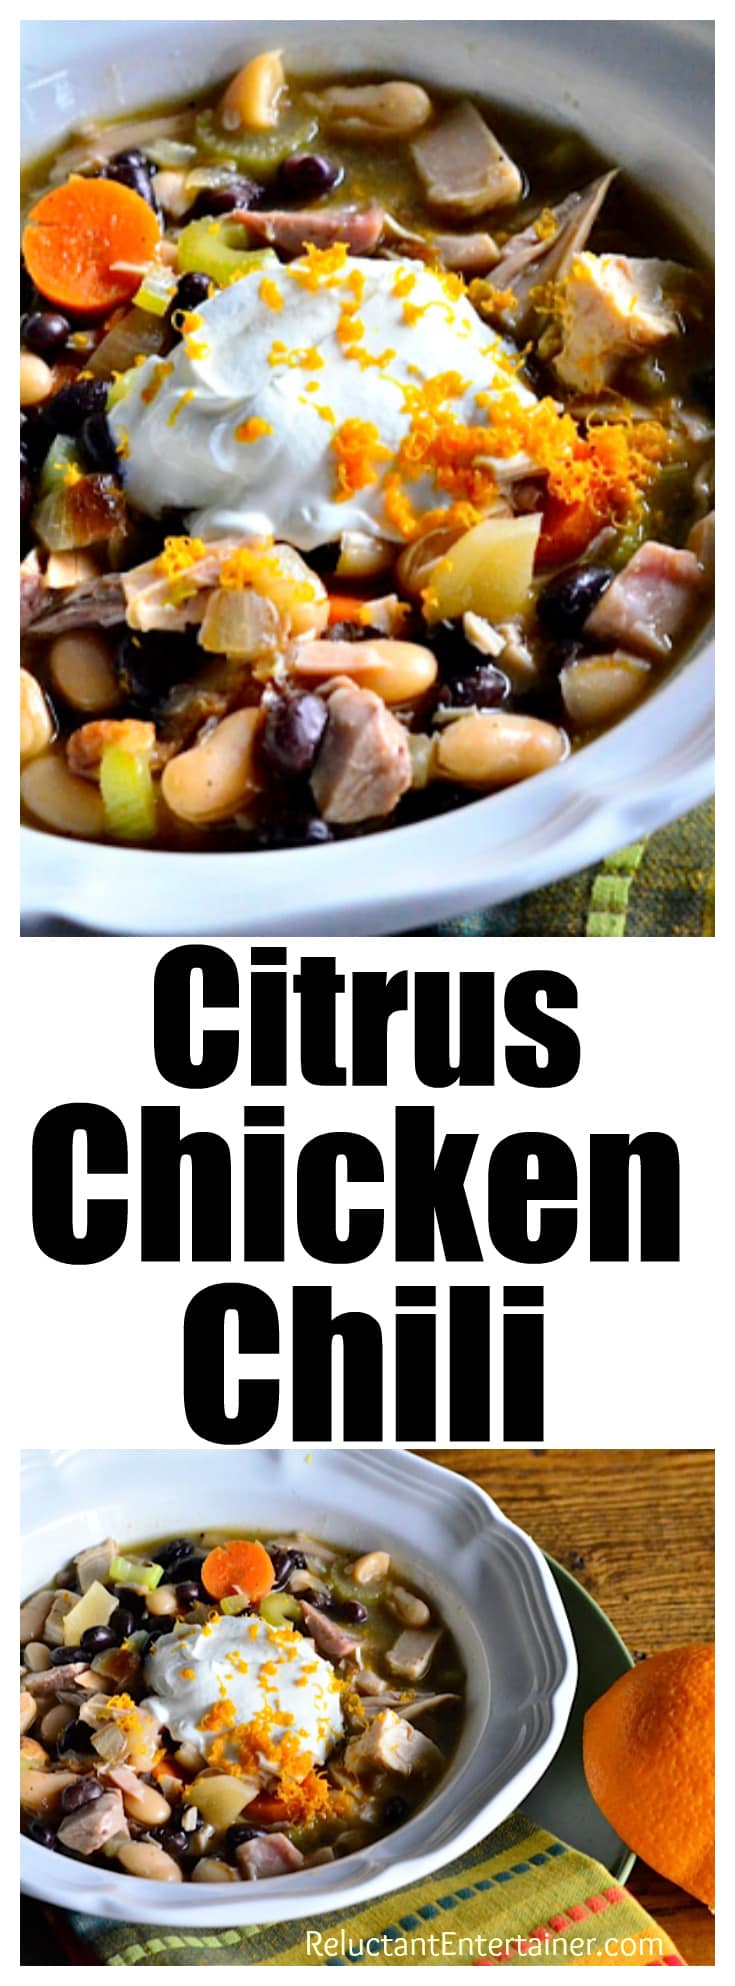 One-Pot Citrus Chicken Chili Recipe